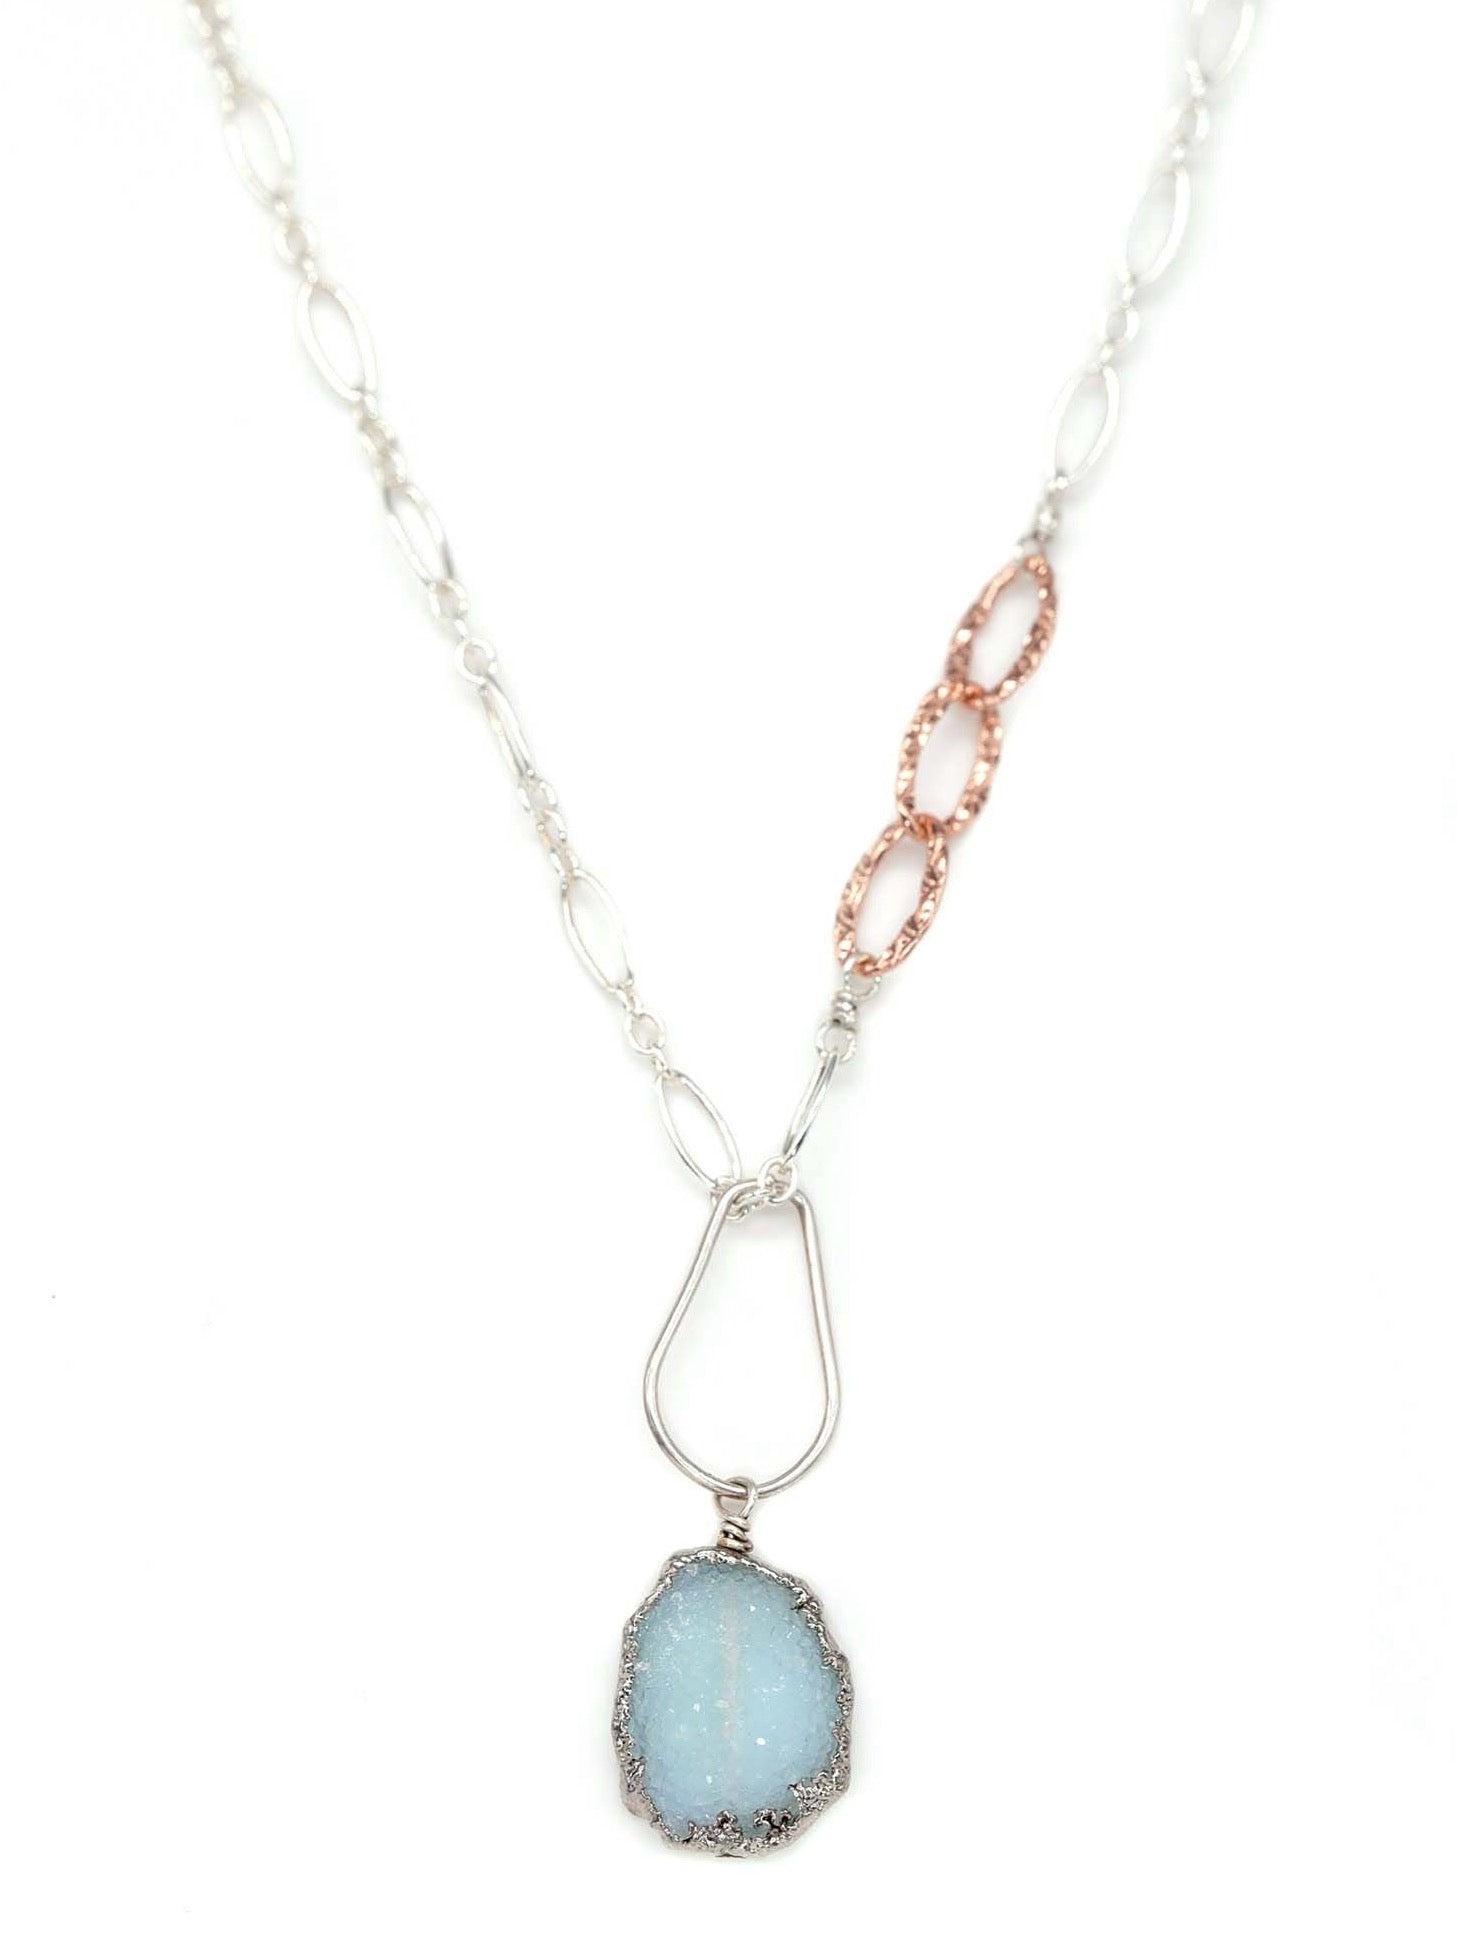 Aquamarine druzy necklace